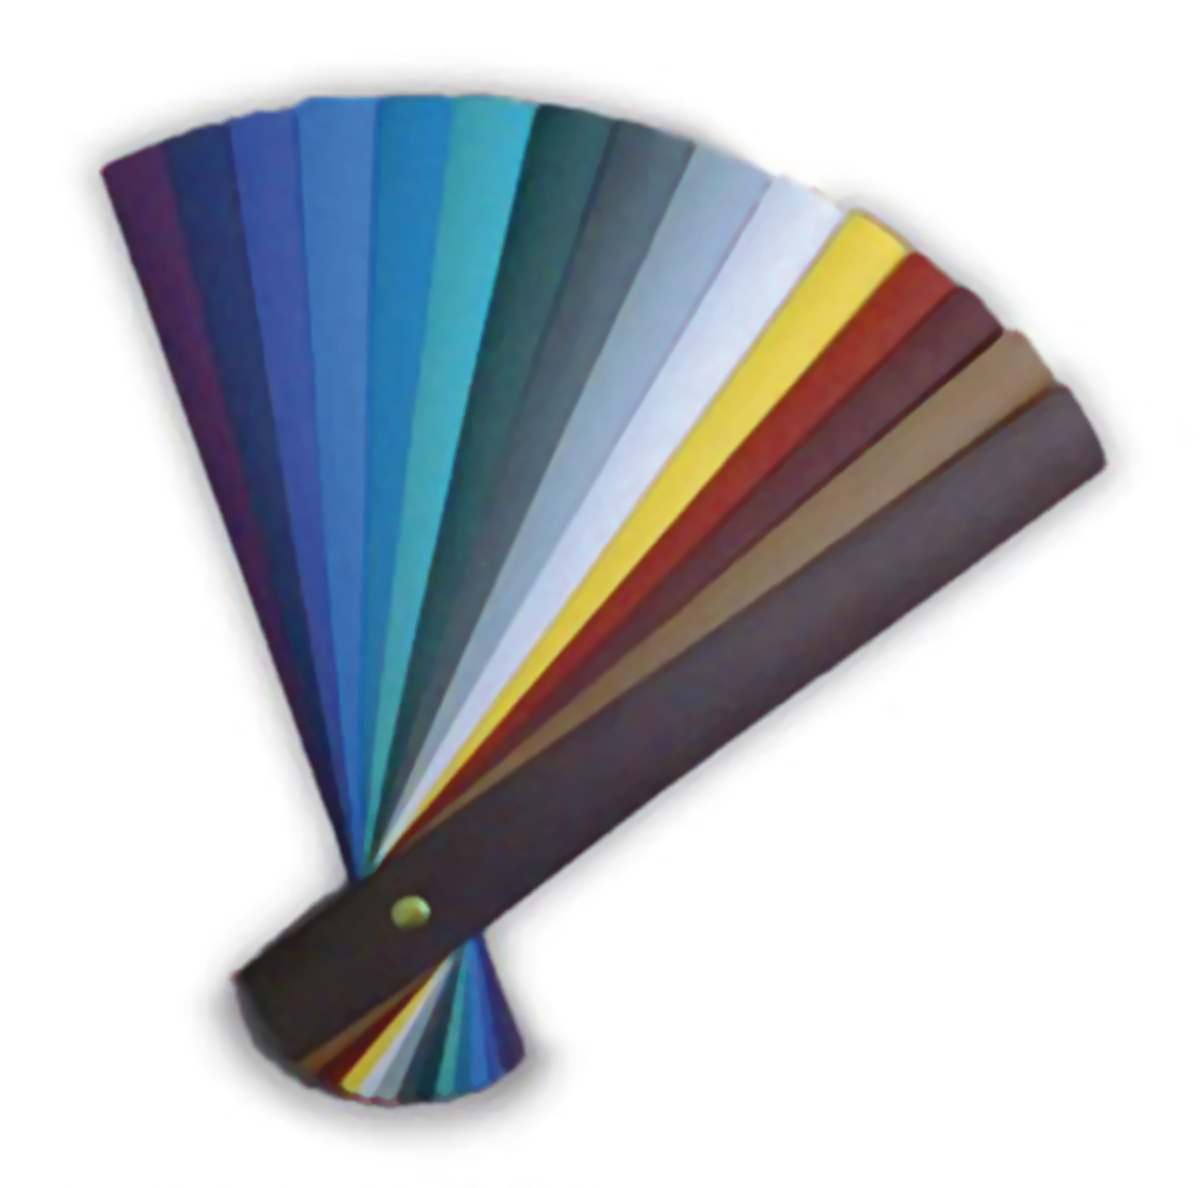 Fastback Super Strip Bindestreifen in verschiedenen Farben zum Top Preis bei KONTORplus erhältlich